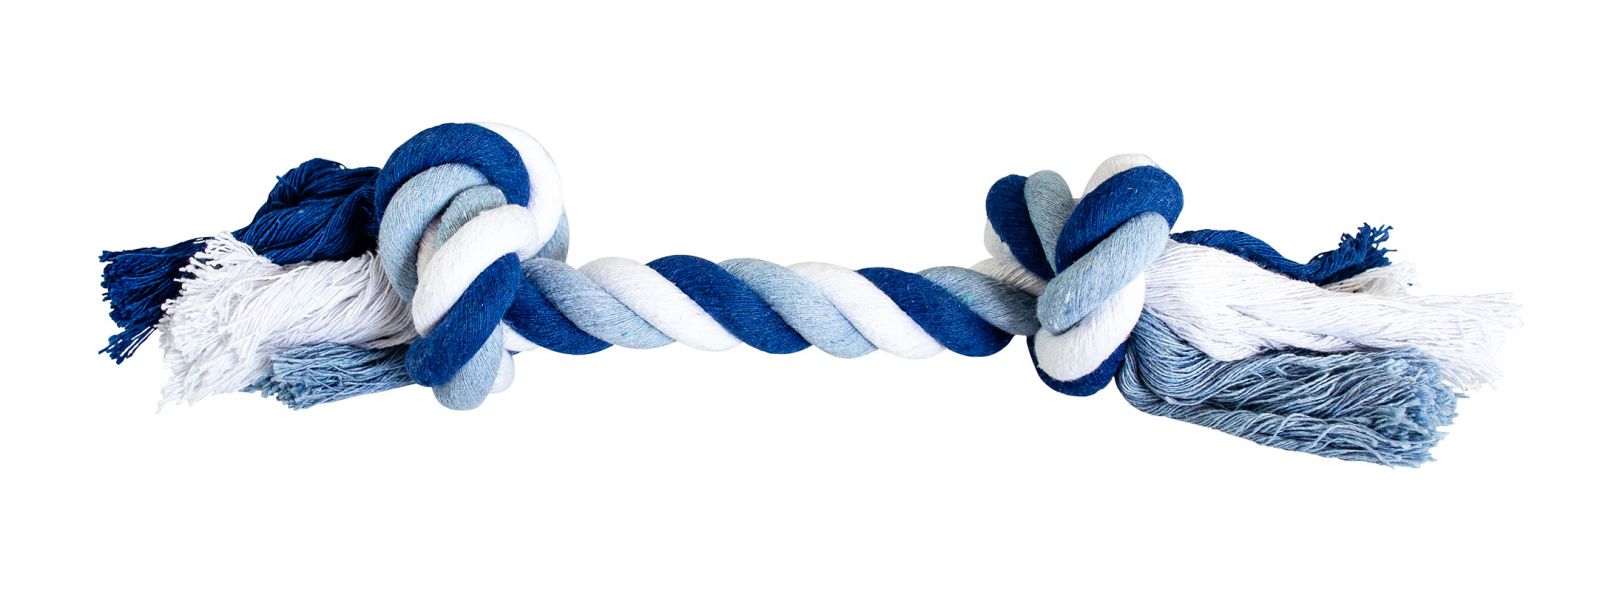  Uzel HipHop bavlněný 2 knoty 25 cm / 75 g tm.modrá, sv.modrá, bílá